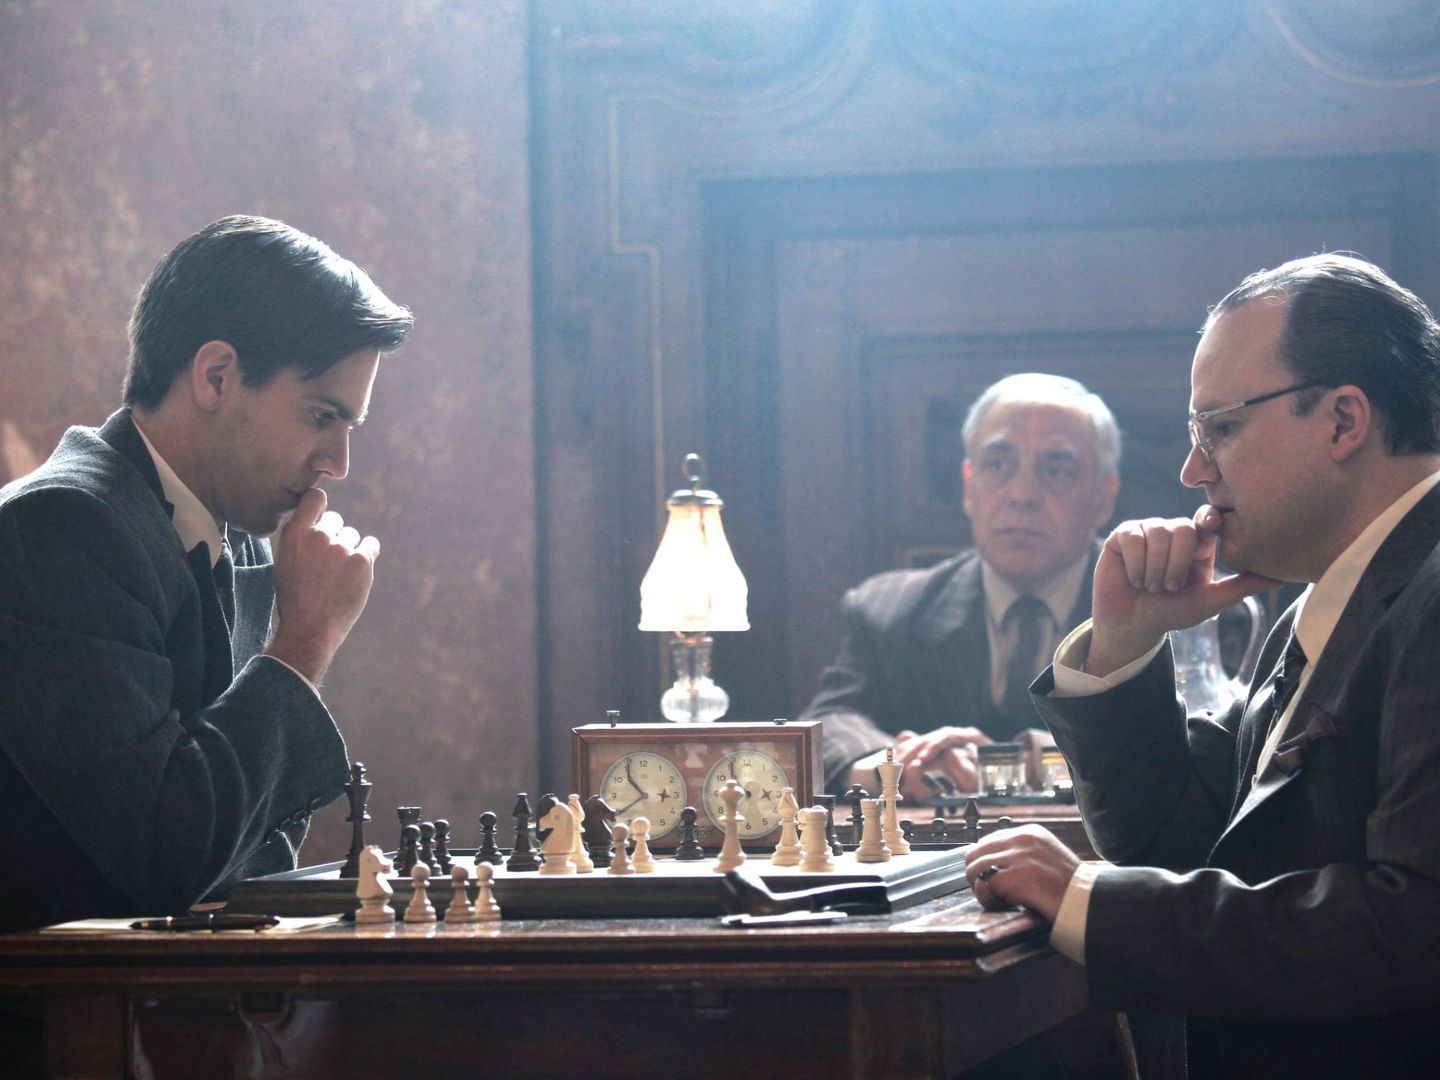 Menchevique, nazi y ¿franquista? El misterio de la muerte de Alekhine, el  genio del ajedrez